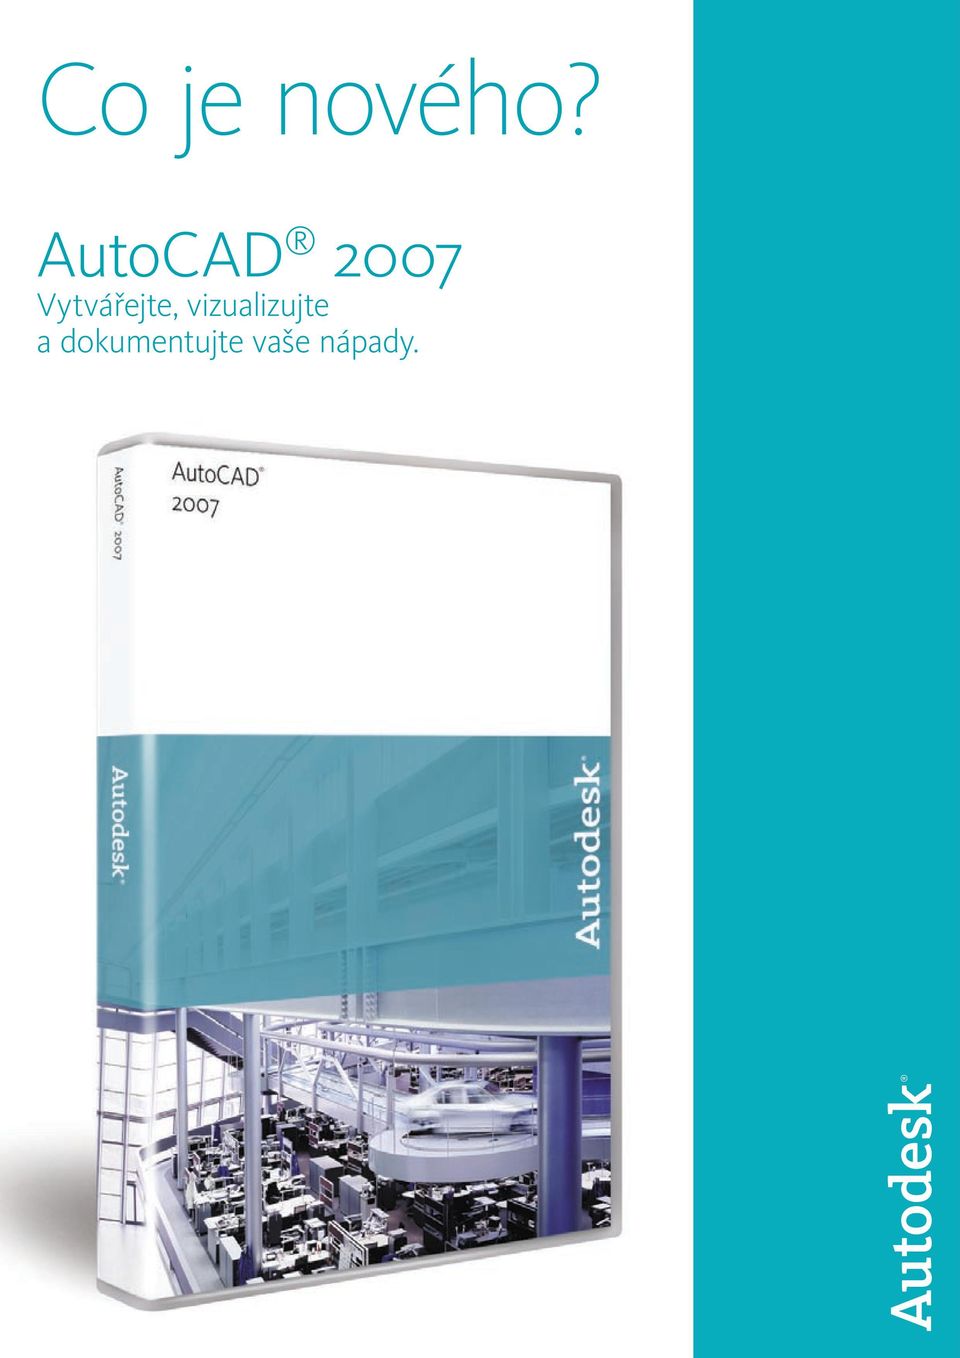 Co je nového? AutoCAD Vytvářejte, vizualizujte a dokumentujte vaše nápady.  - PDF Free Download